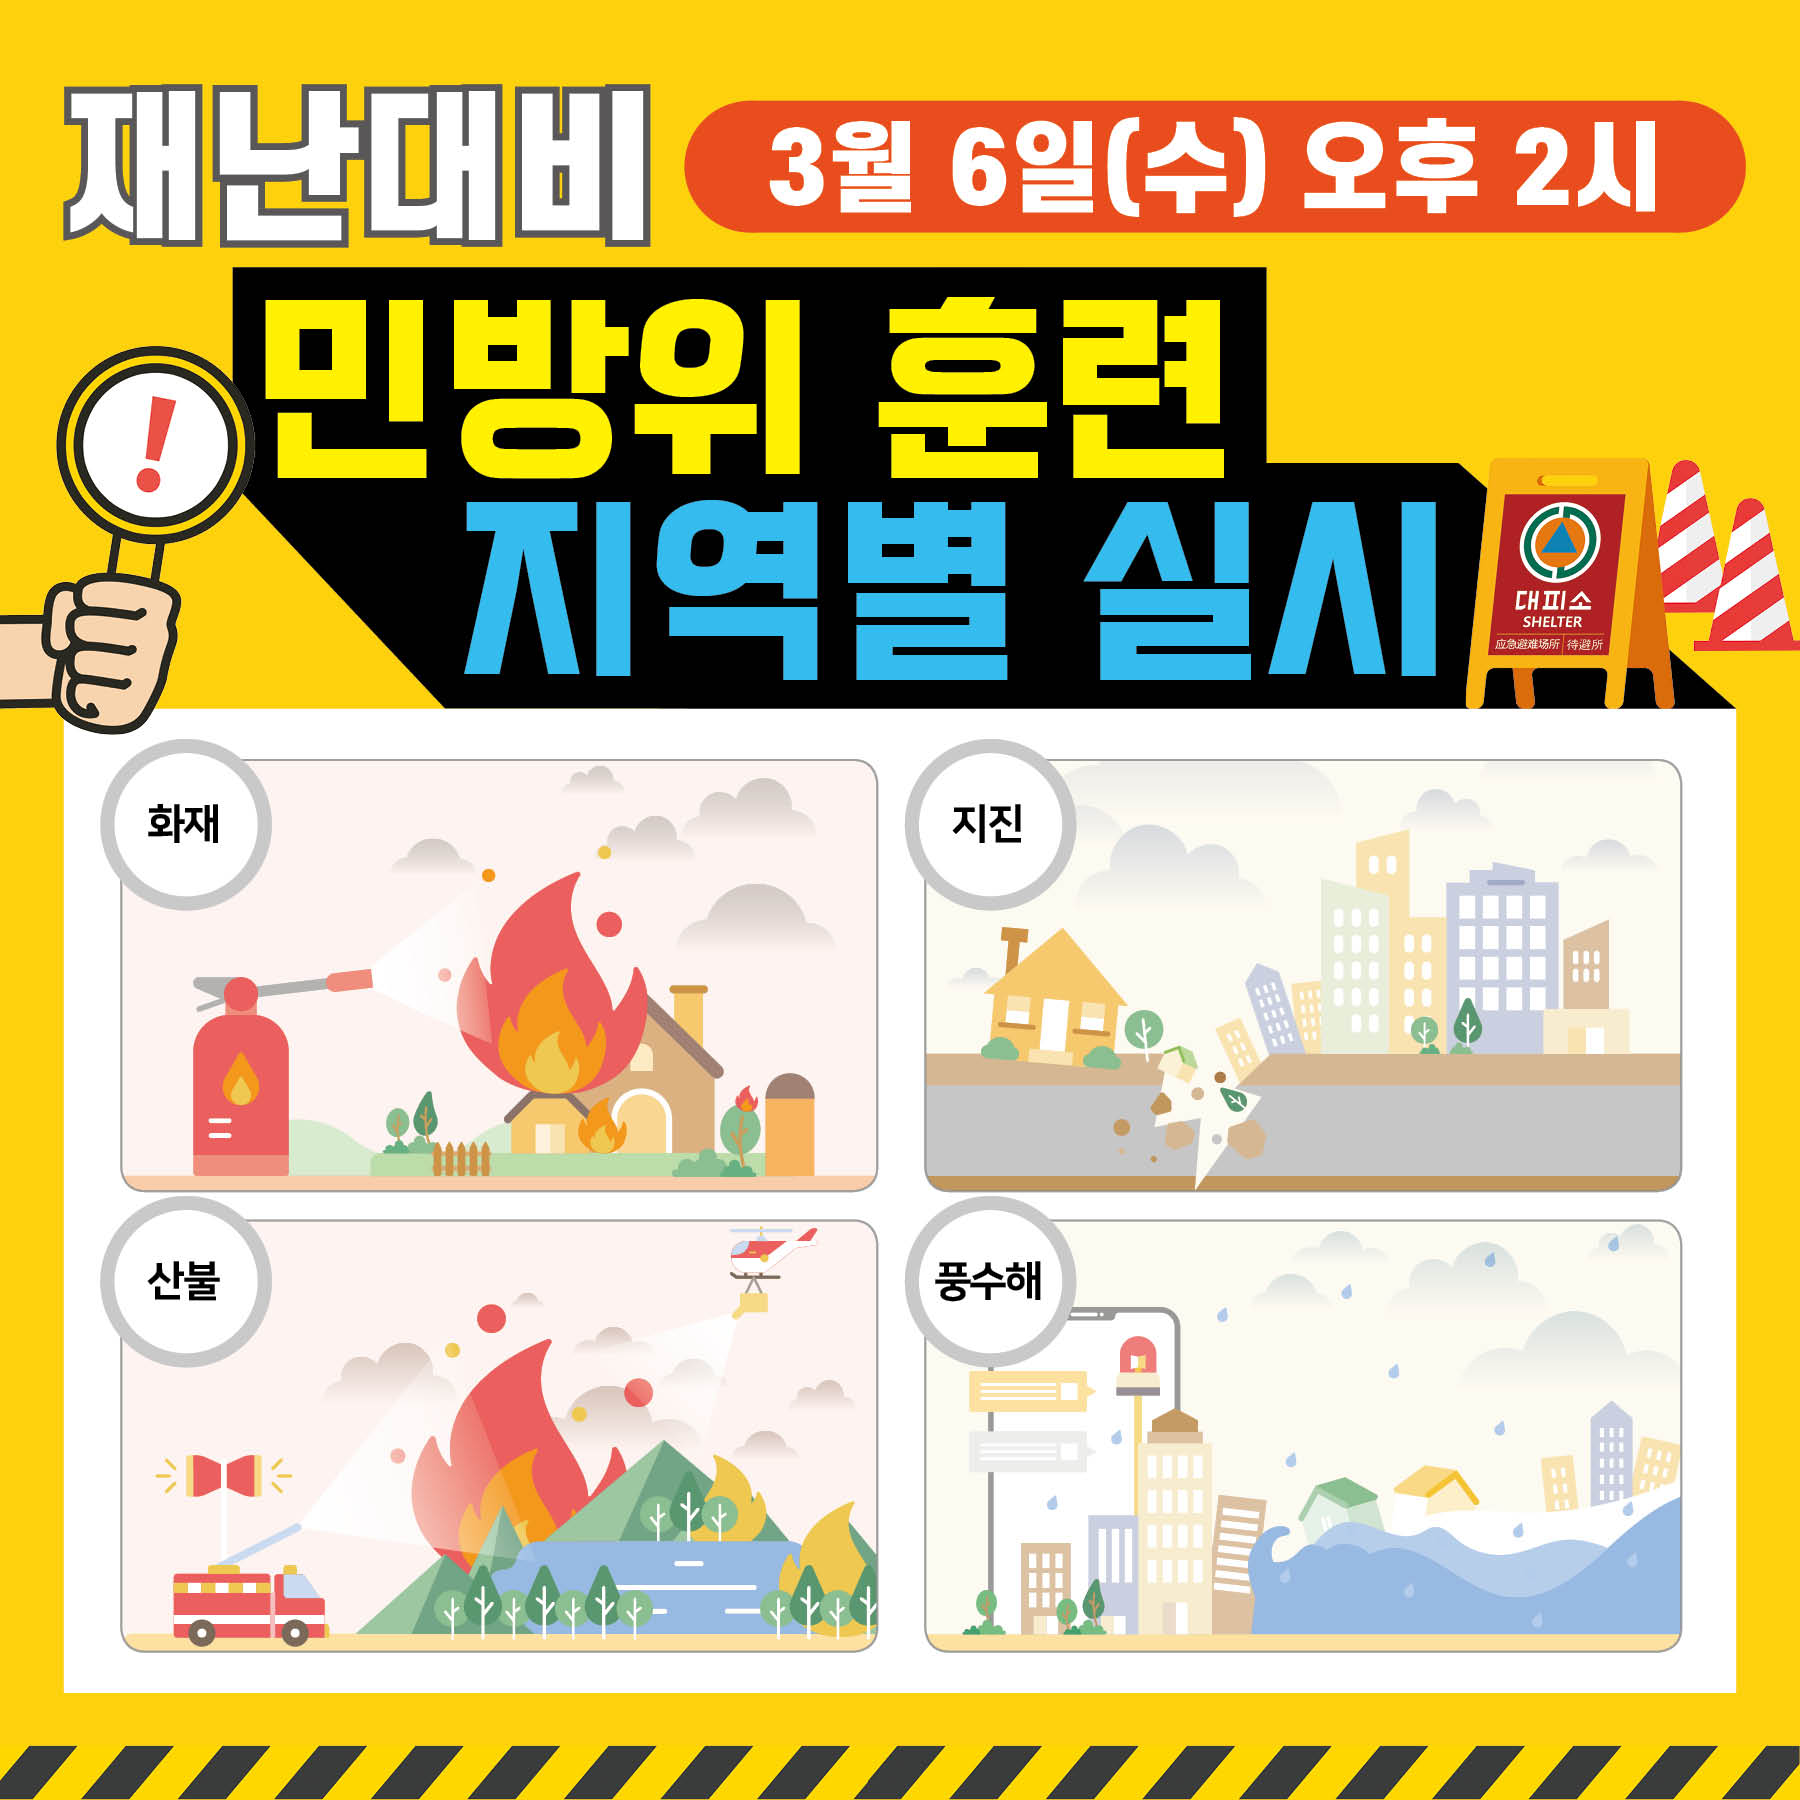 재난대비 민방위 훈련 지역별 실시 3. 6.(수) 오후2시
화재/지진/산불/풍수해
